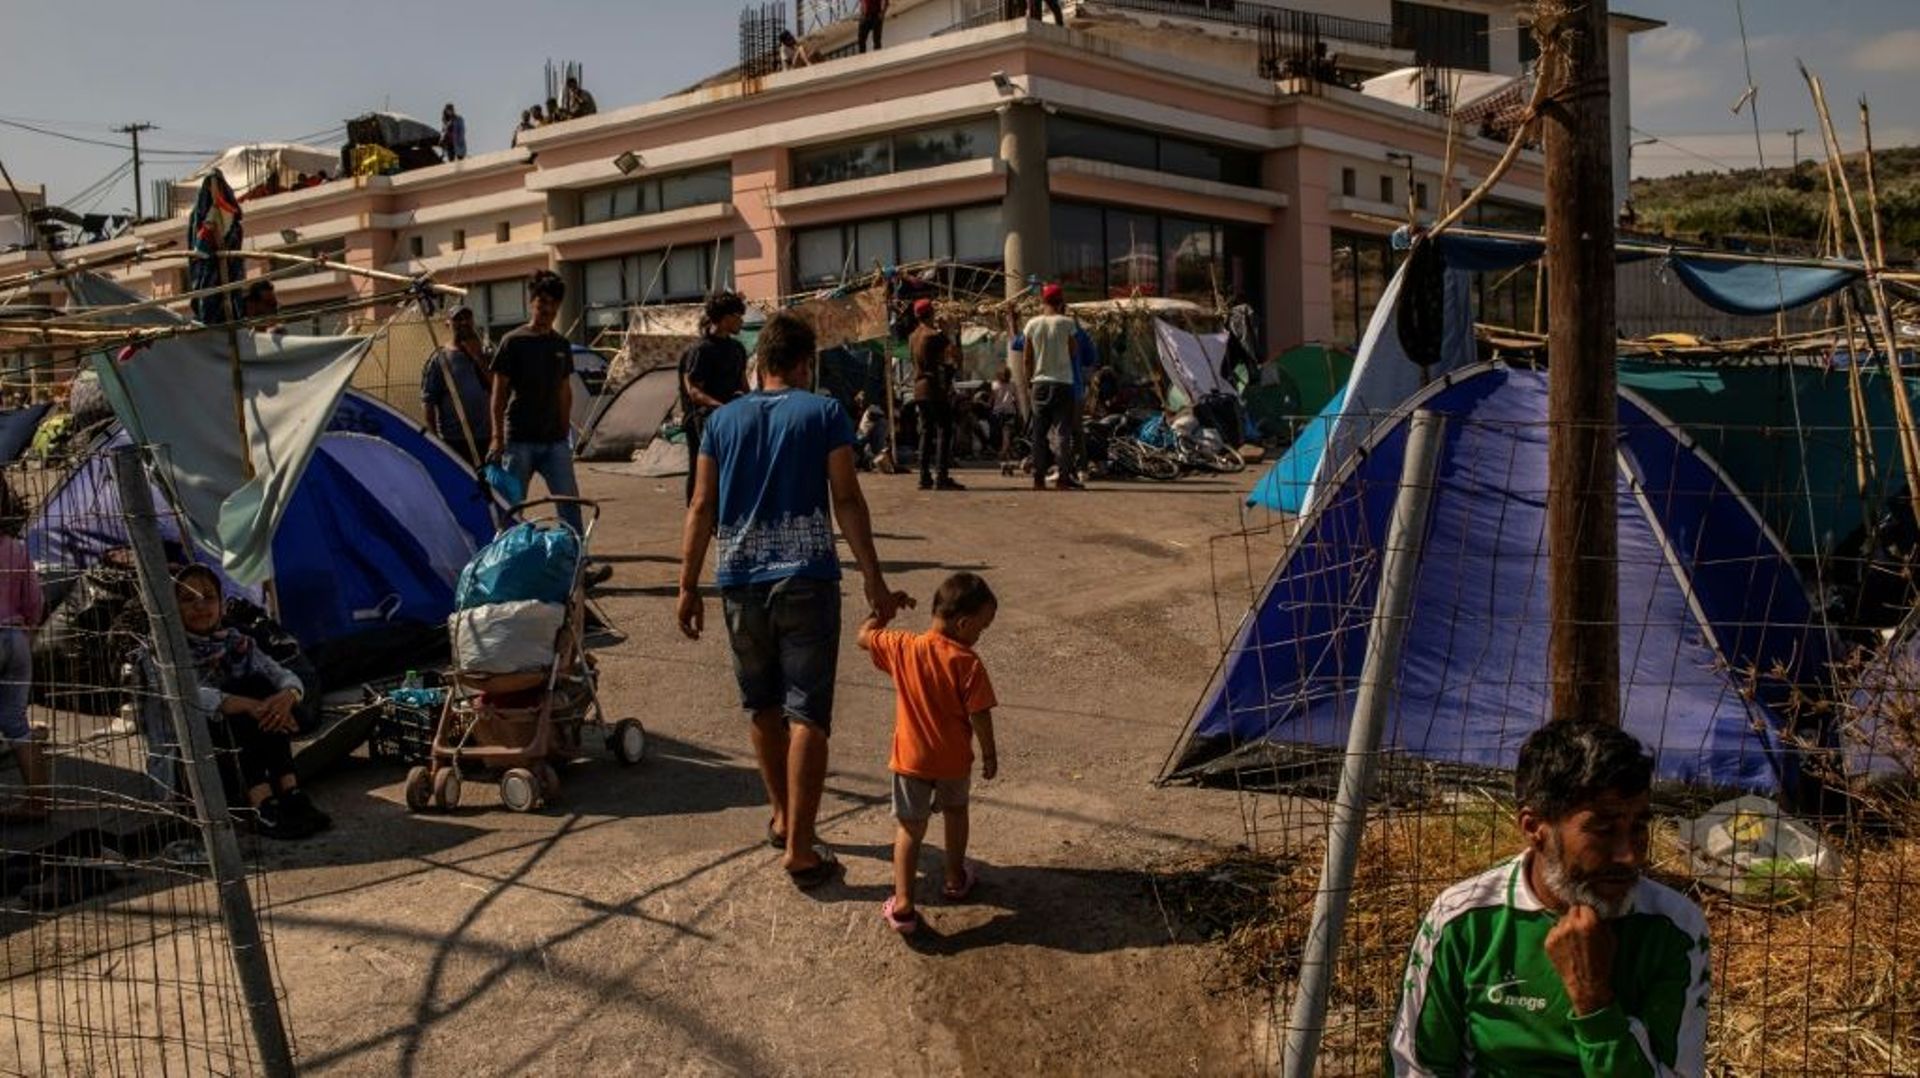 Des demandeurs d'asile sans abri après l'incendie de leur camp ont installé un nouveau camp de fortune sur l'île de Lesbos (Grèce), le 14 septembre 2020